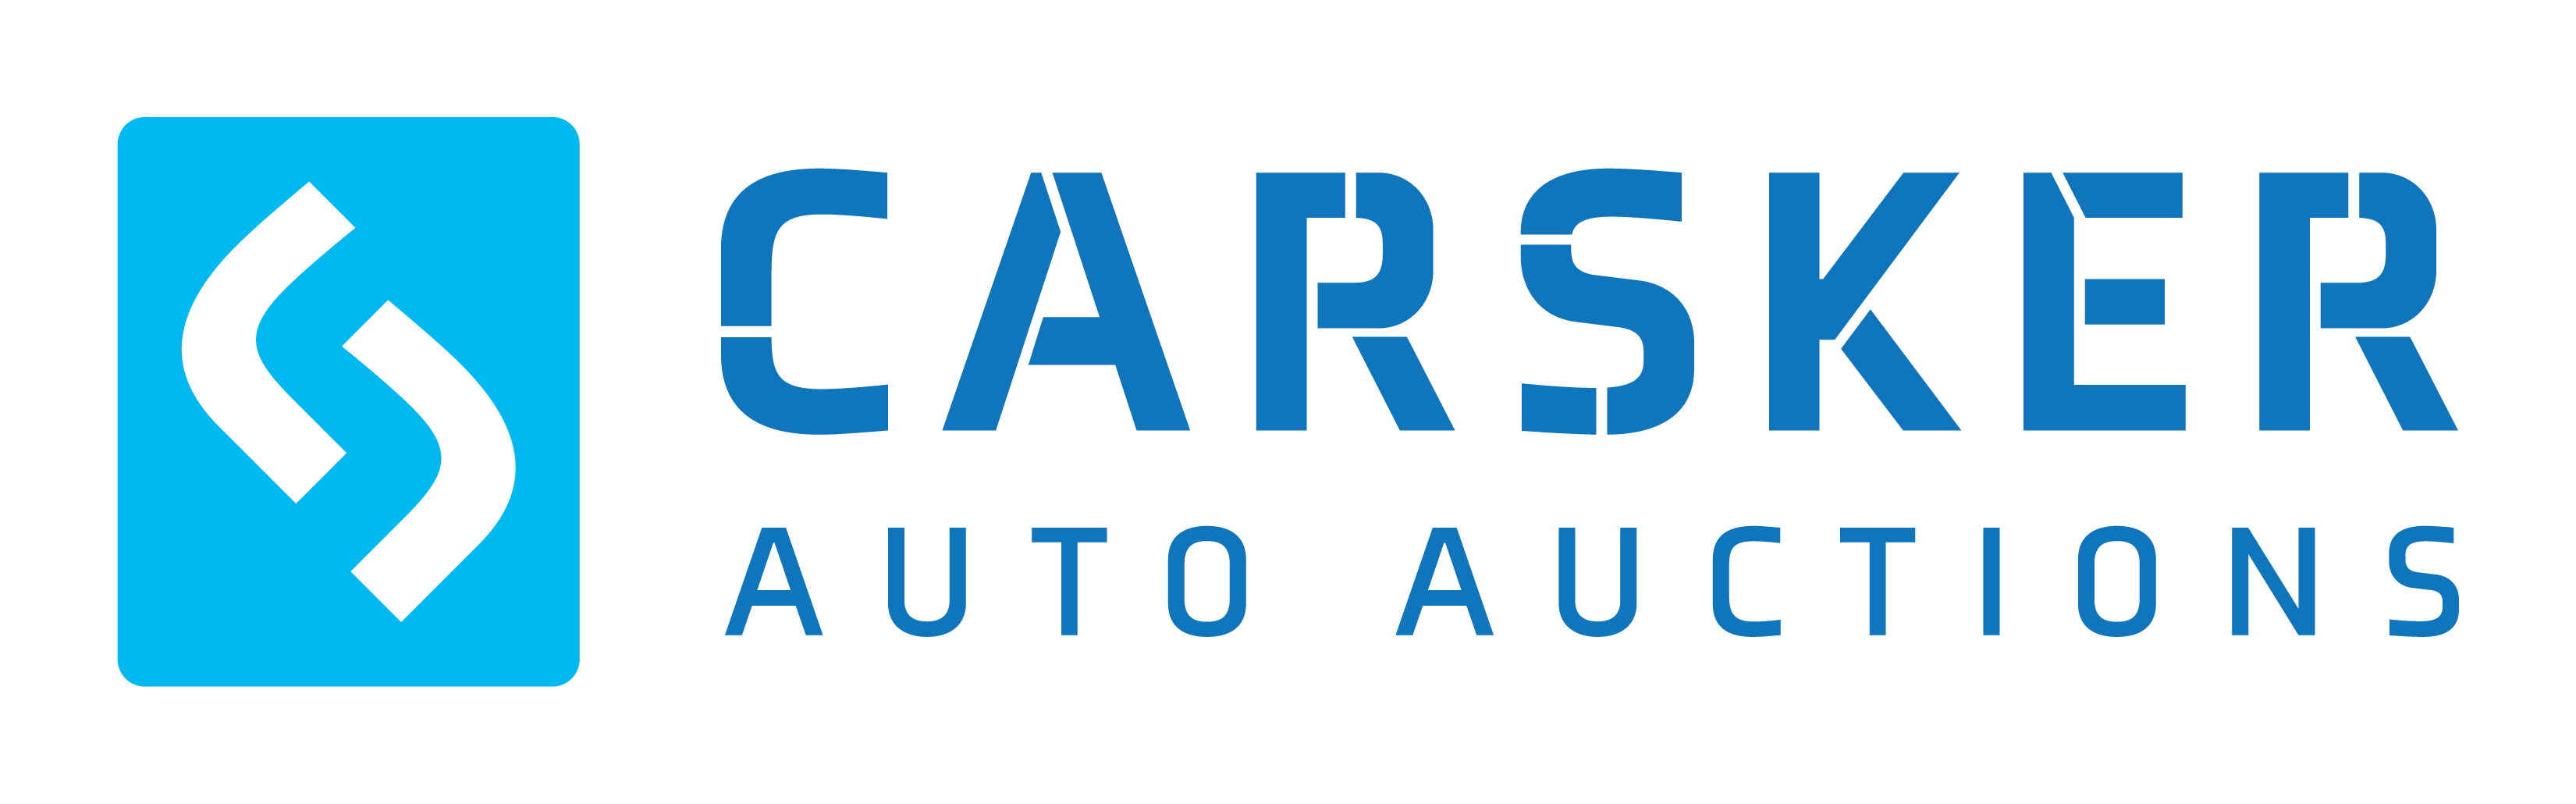 Carsker Auto Auctions